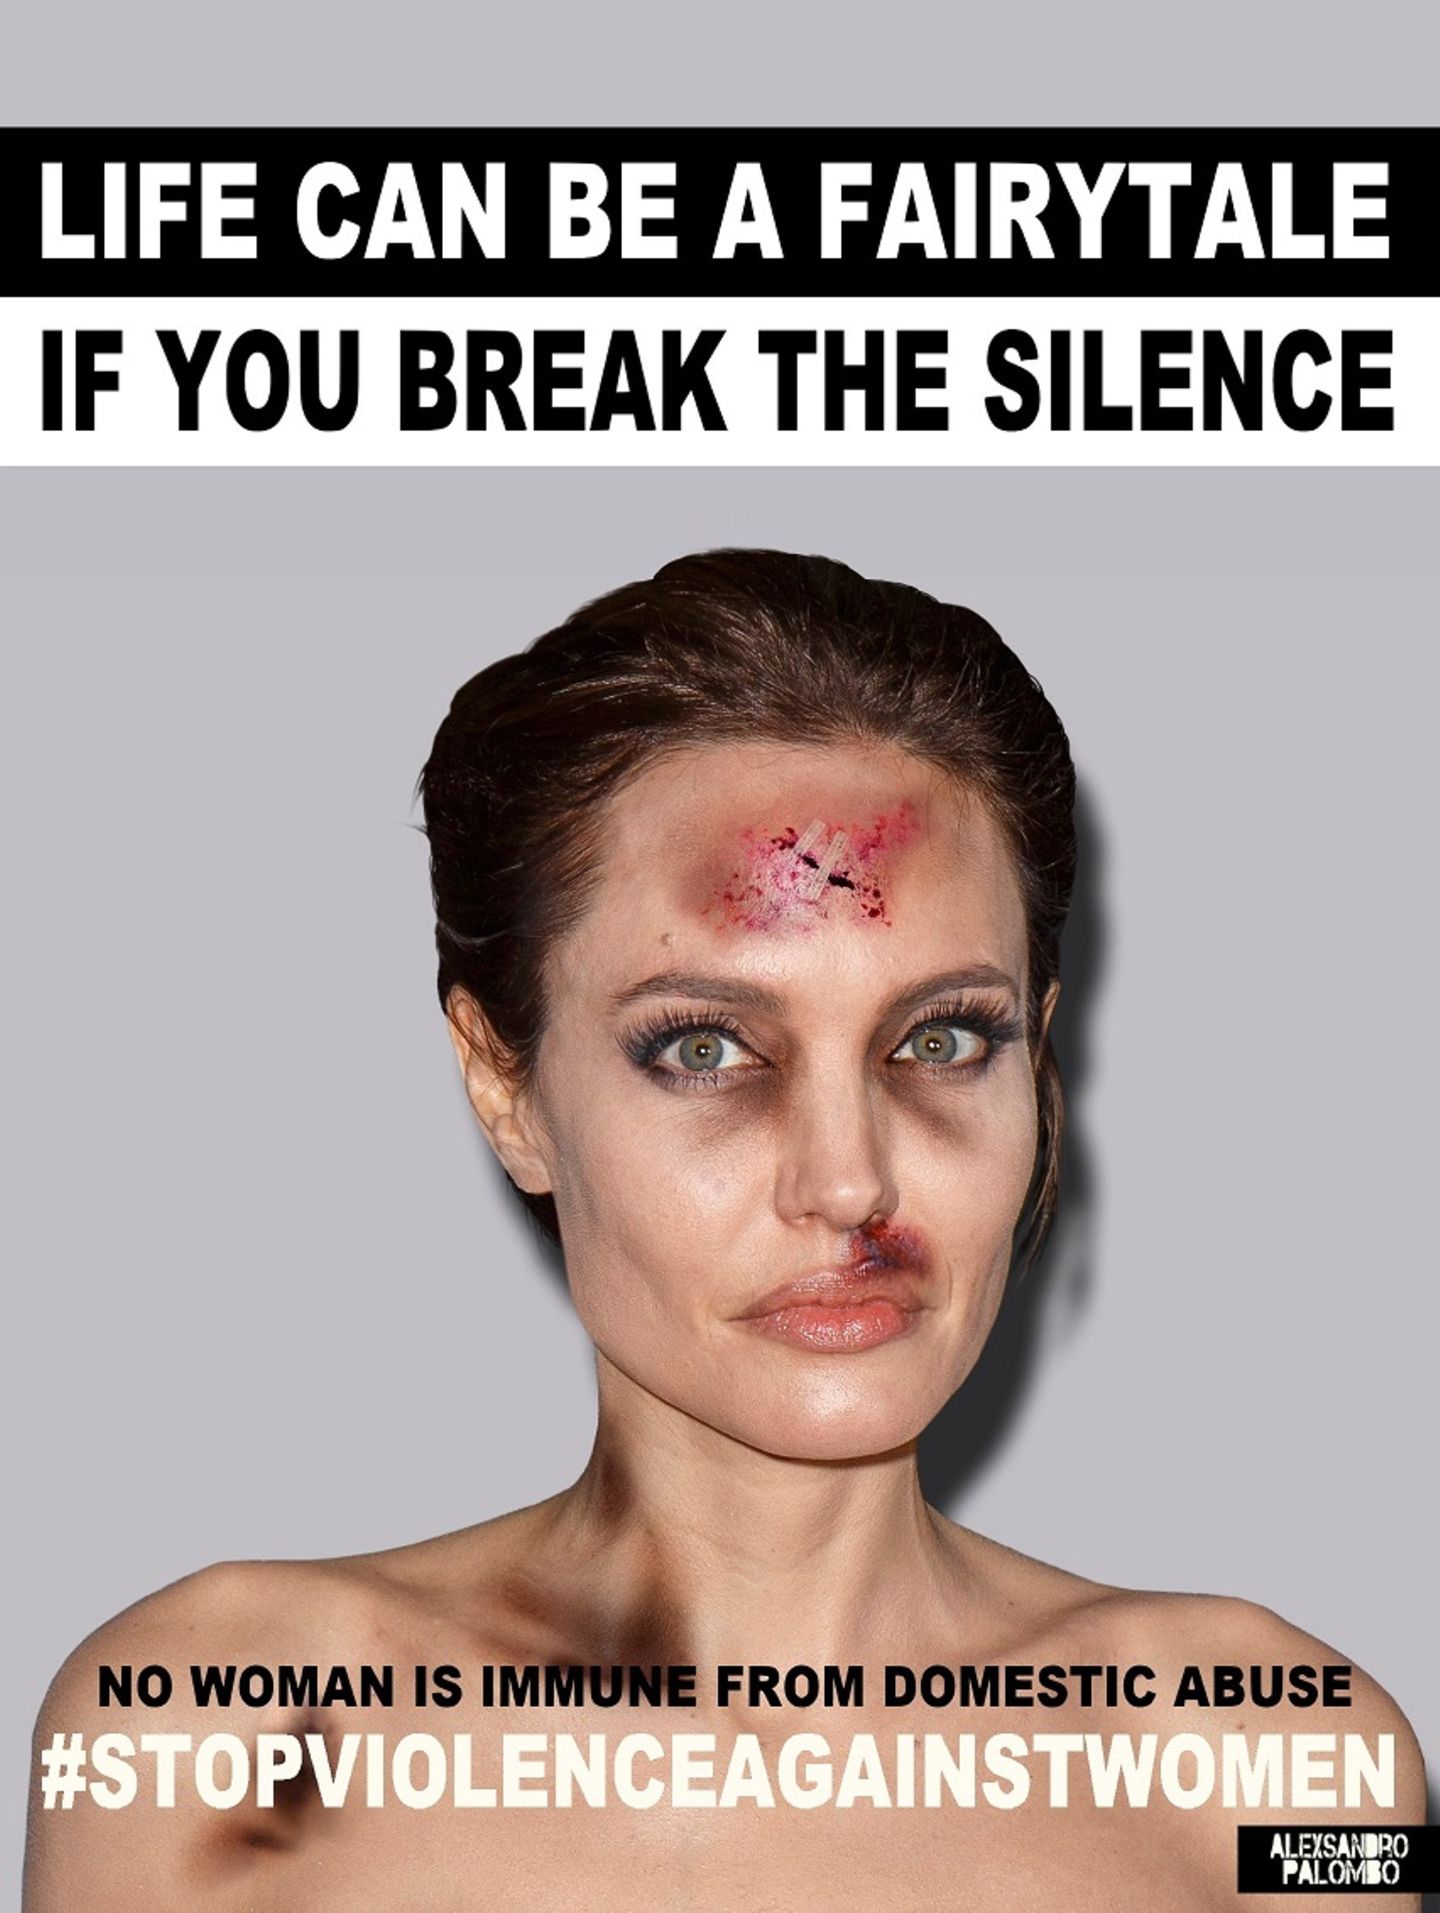 Häusliche Gewalt gegen Frauen passiert jeden Tag, auf der ganzen Welt - und leider oft genau dort, wo wir es am wenigsten vermuten würden. Der italienische Künstler und Aktivist Alexsandro Palombo hat sich schon mehrfach mit diesem bedrückenden Thema auseinandergesetzt. Im vorigen Jahr inszenierte er beliebte Comicfiguren als Opfer häuslicher Gewalt, in einer neuen Serie hat er Fotos berühmter Frauen wie Angelina Jolie (siehe oben) oder Madonna per digitaler Bildbearbeitung übel zugerichtet. Palombo hat die Bilder unter dem Titel "Das Leben kann ein Märchen sein, wenn du das Schweigen brichst" veröffentlicht - und spricht damit direkt das größte Problem bei häuslicher Gewalt an. Denn gerade weil Gewalt gegen Frauen so häufig im Familien- oder Bekanntenkreis passiert, trauen sich viele Opfer nicht, darüber zu sprechen und den Täter anzuzeigen. Dementsprechend hoch ist auch die Dunkelziffer. Allein in Deutschland hat jede vierte Frau im Alter von 16 bis 85 Jahren mindestens einmal in ihrem Leben körperliche und/oder sexuelle Gewalt durch Beziehungspartner/-innen erlebt. Umso wichtiger ist es, die Menschen für dieses Thema zu sensibilisieren, findet Alexsandro Palombo. "Häusliche Gewalt ist ein sozialer Krebs, der keine Grenzen kennt." Es könne jeden treffen - "ob du eine gewöhnliche Person bist oder ein Star." Deswegen teilt er seine Bilder in sozialen Netzwerken - und hofft, damit mehr Frauen zu ermutigen, ihr Schweigen zu brechen.